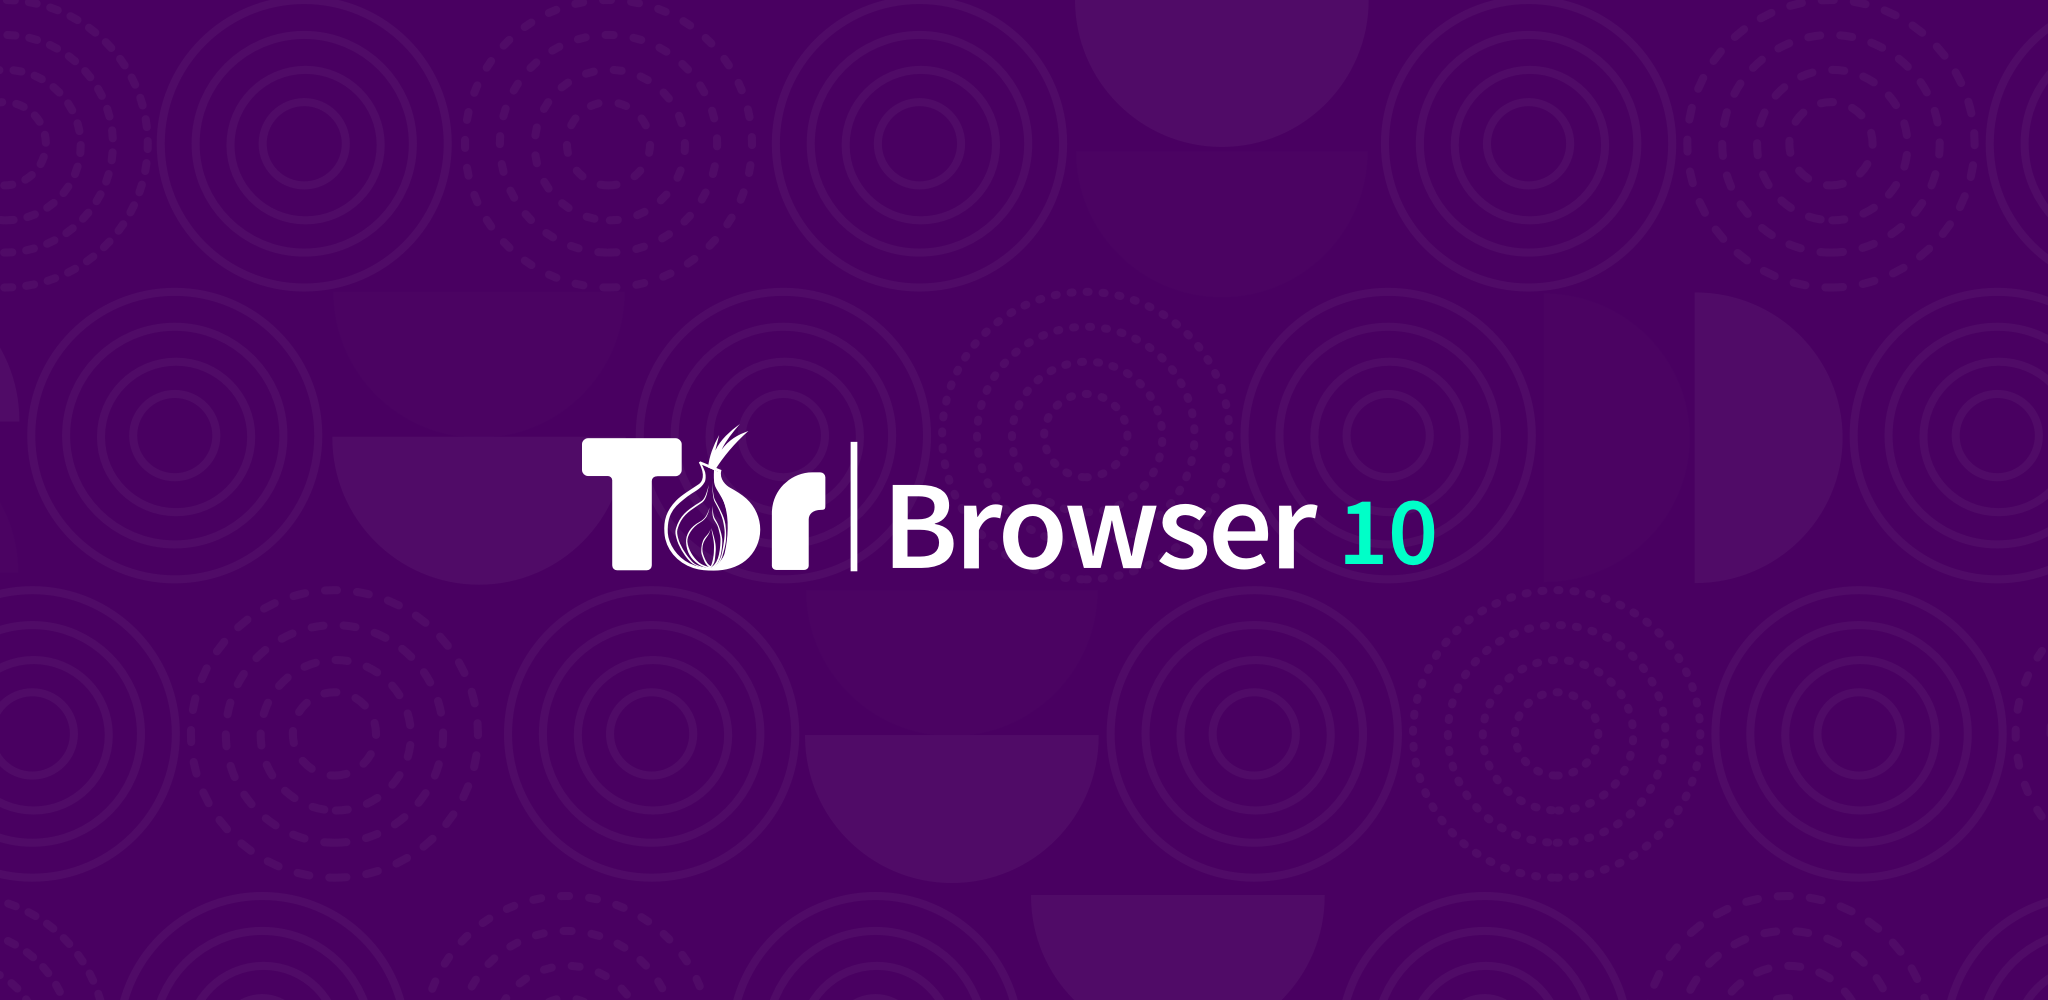 Скачать tor browser bundle rus для windows mega tor browser установить страну mega